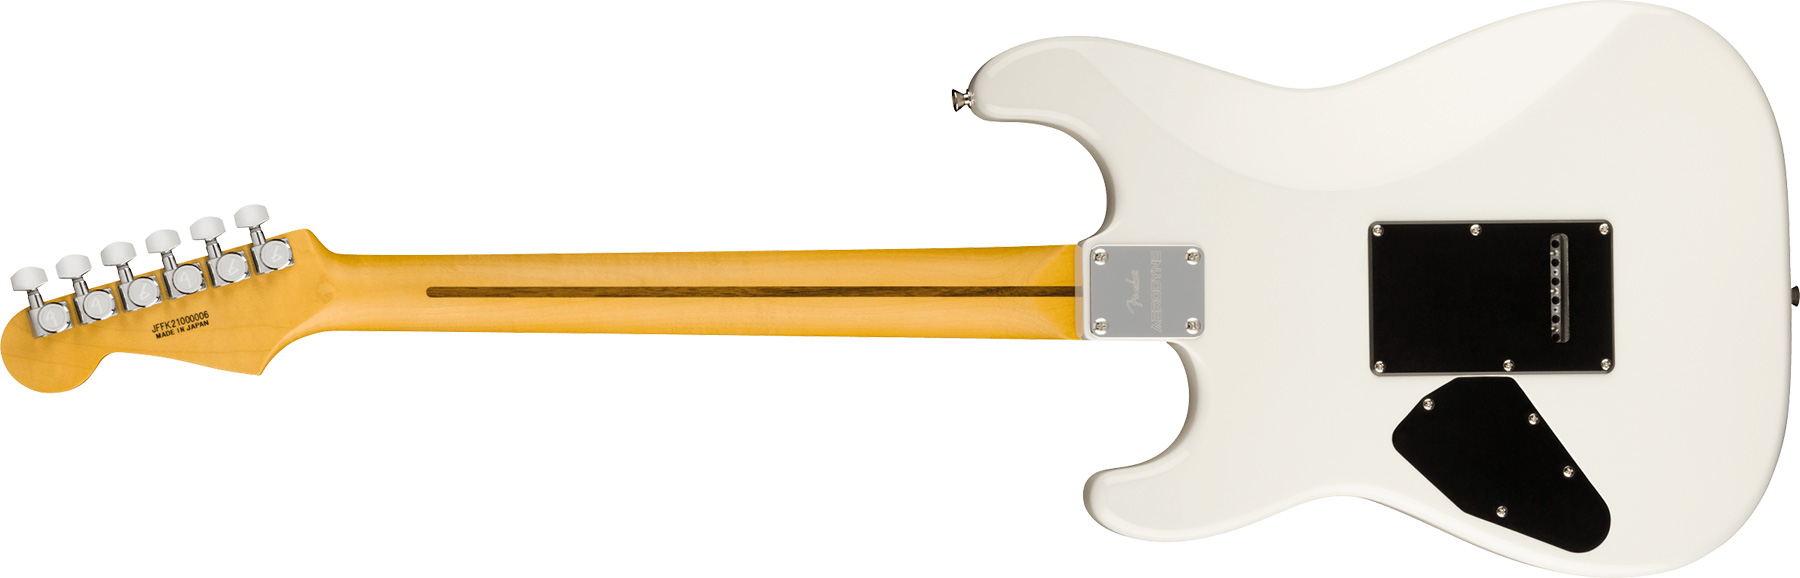 Fender Strat Aerodyne Special Jap 3s Trem Rw - Bright White - Elektrische gitaar in Str-vorm - Variation 1